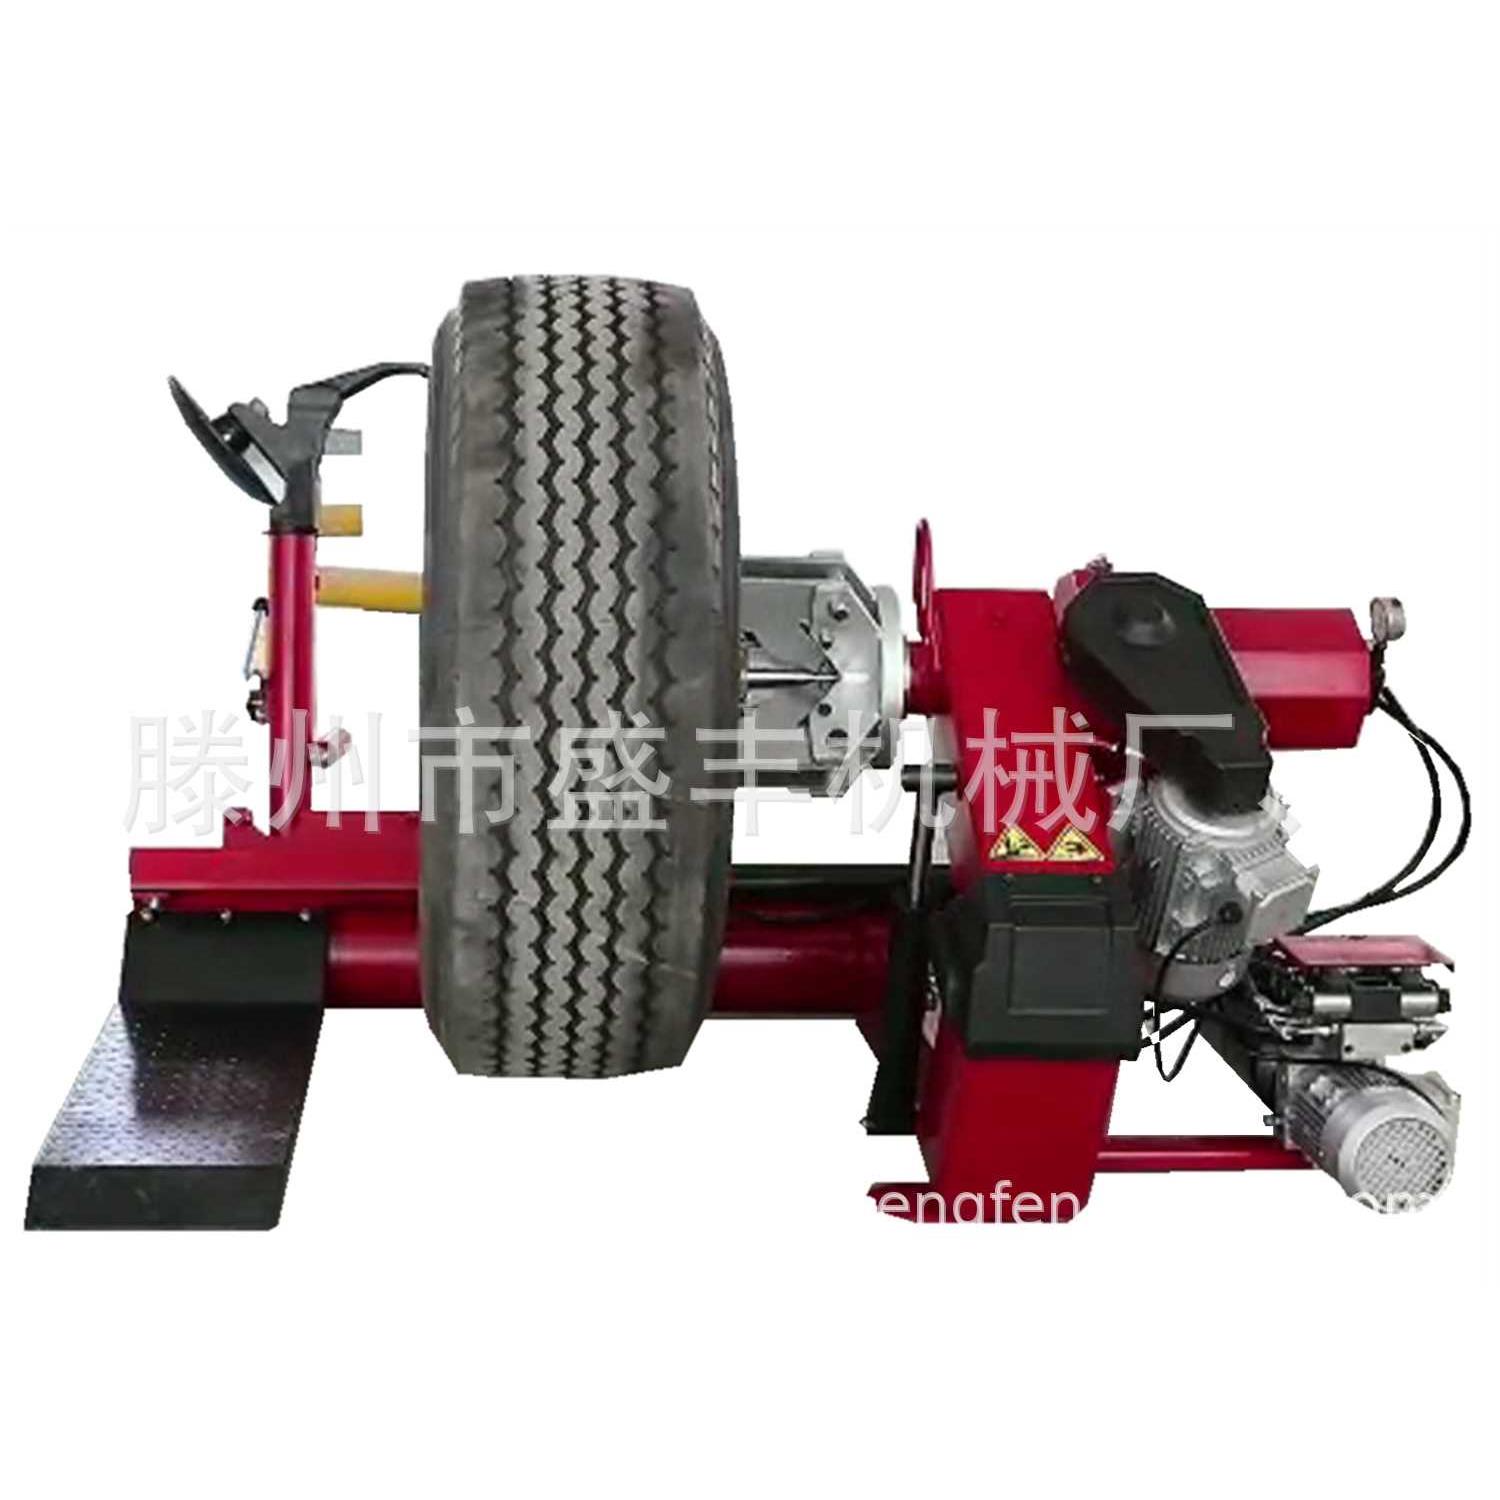 新款农用车轮胎扒胎机 工程车轮胎拆装机 规格型号齐全 价格优惠